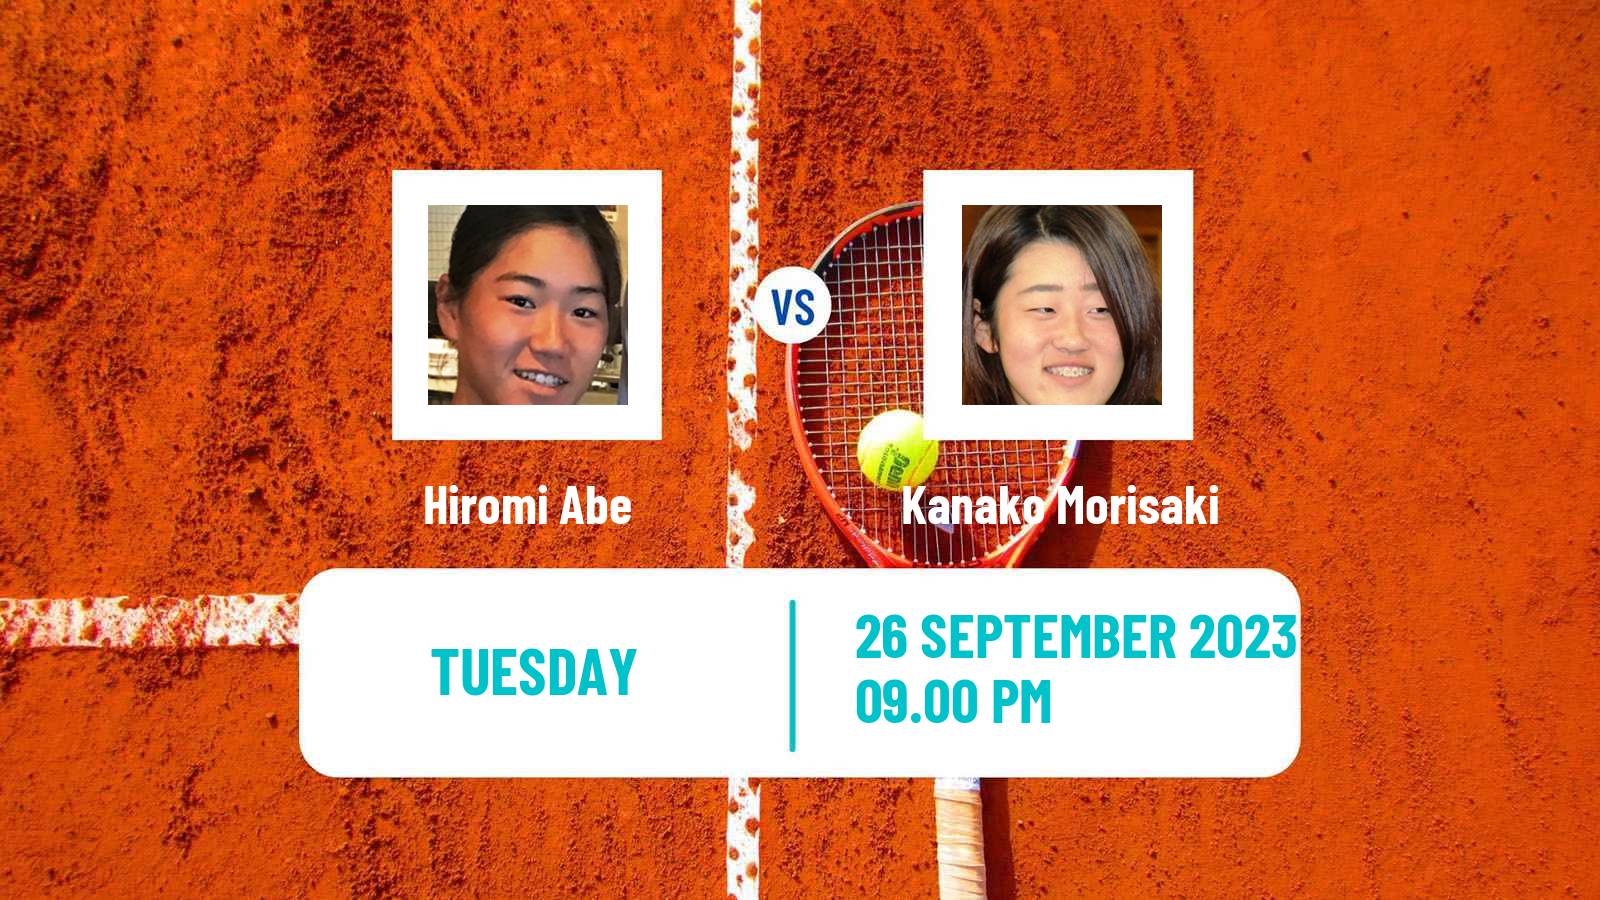 Tennis ITF W40 Nanao Women Hiromi Abe - Kanako Morisaki